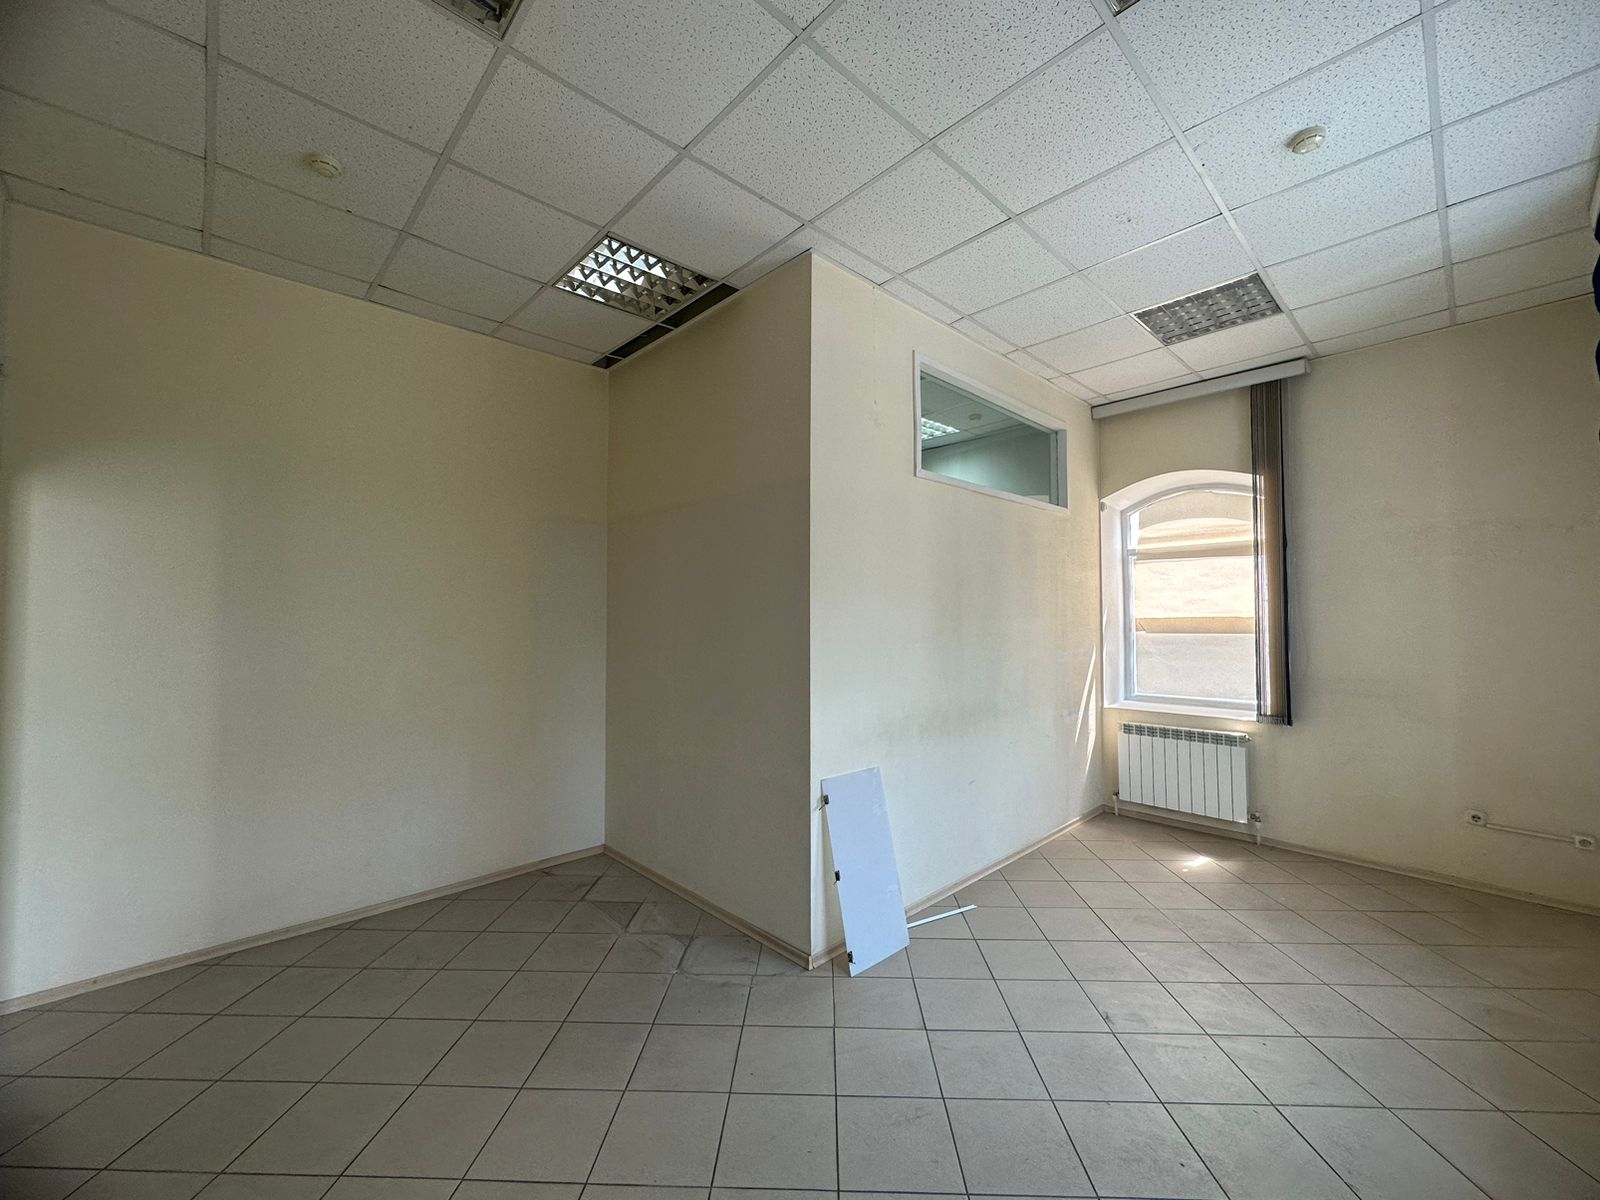 Предлагаем к аренде офисы на 2ом этаже по ул. Карла Маркса д.53, площадью 40 м², напрямую от собственника._7